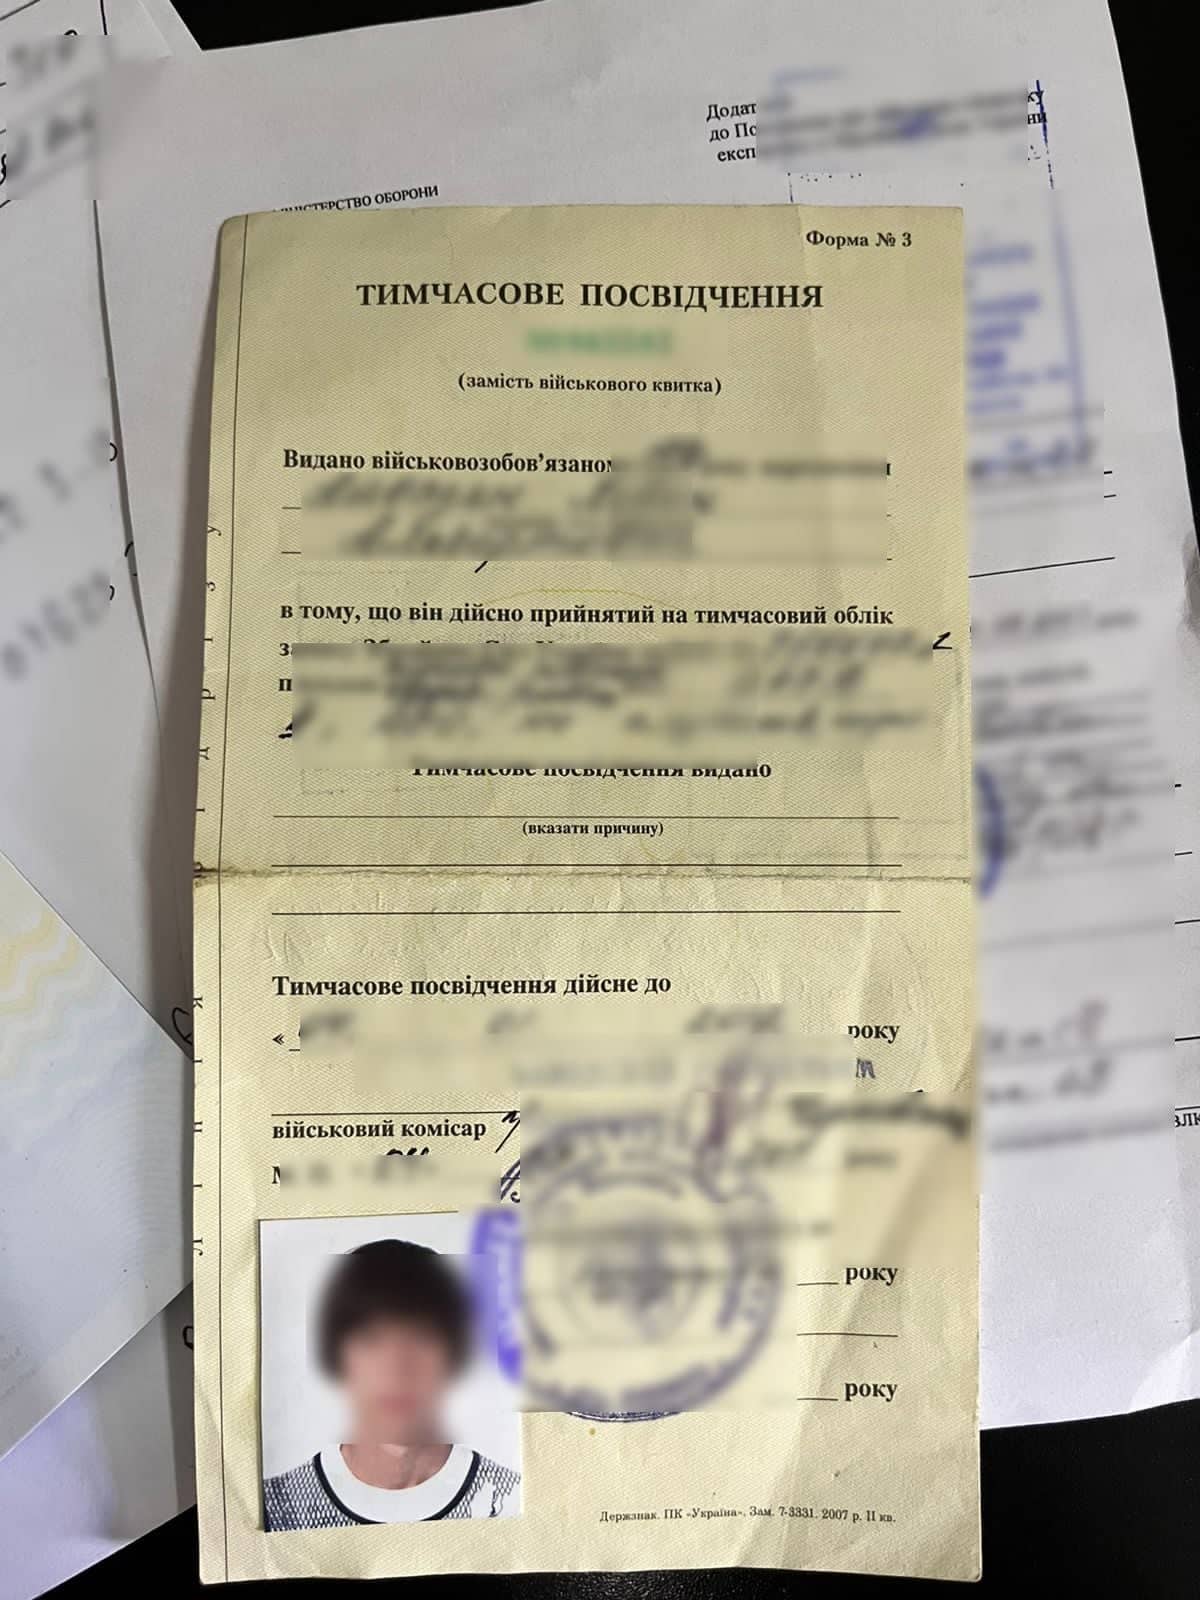 На Закарпатті двоє українців намагалися перетнути кордон за підробленими документами (ФОТО)